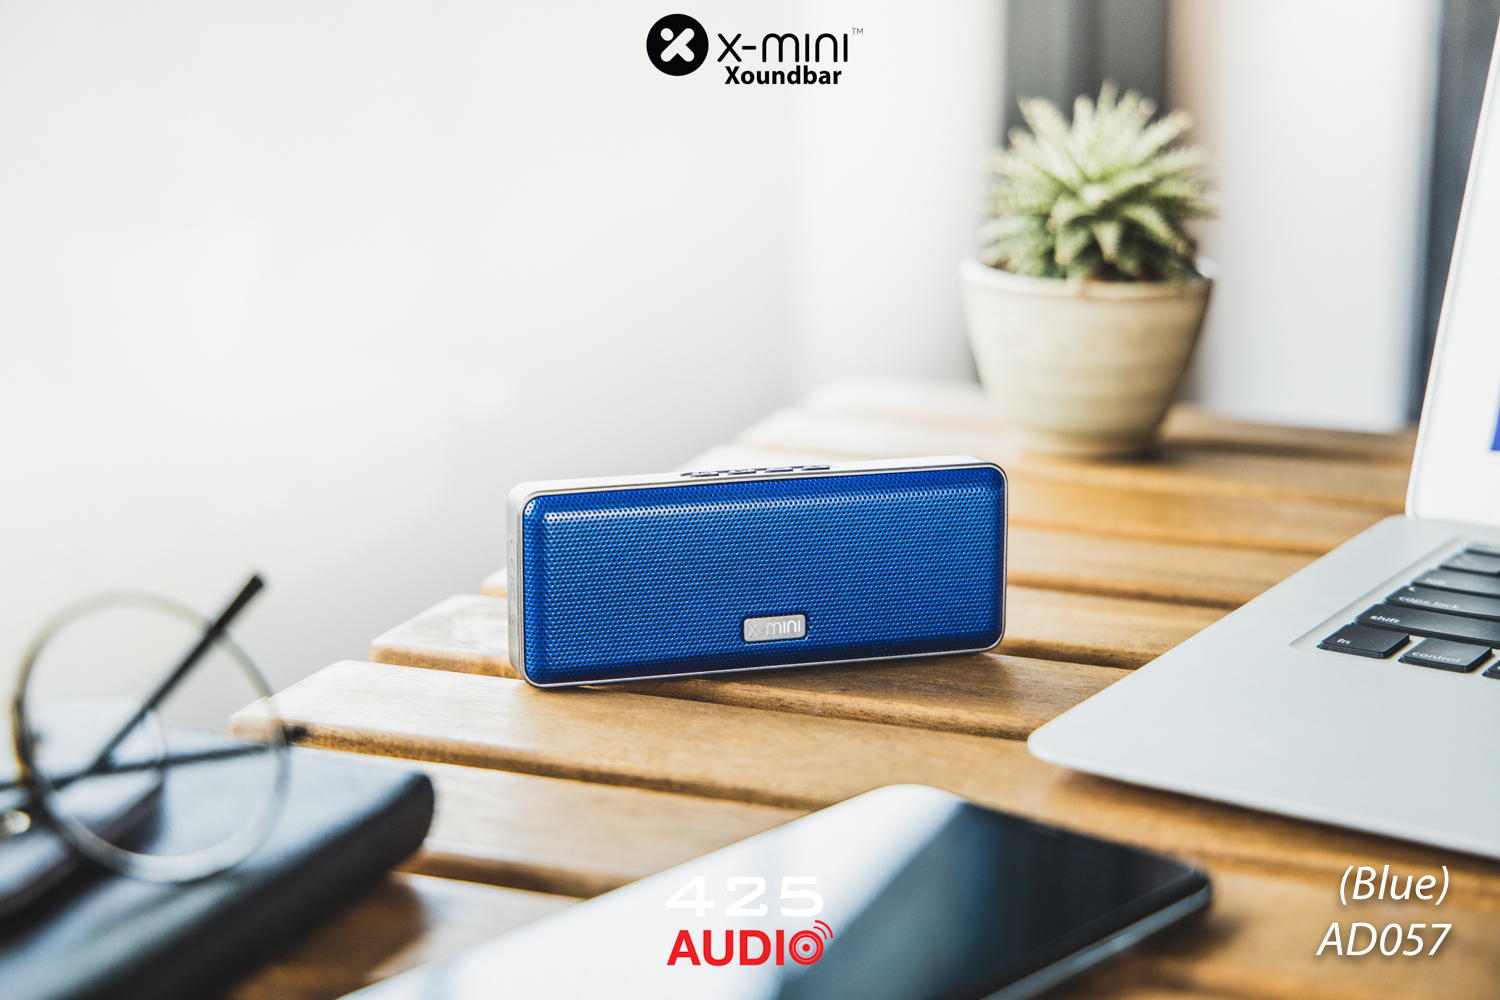 X-mini Xoundbar,X-mini,best bluetooth speaker 2019,best small bluetooth speaker 2019,ลำโพงบลูทูธเสียงดี,ลำโพงบลูทูธพกพา,ลำโพงกันน้ำ,Wireless speaker